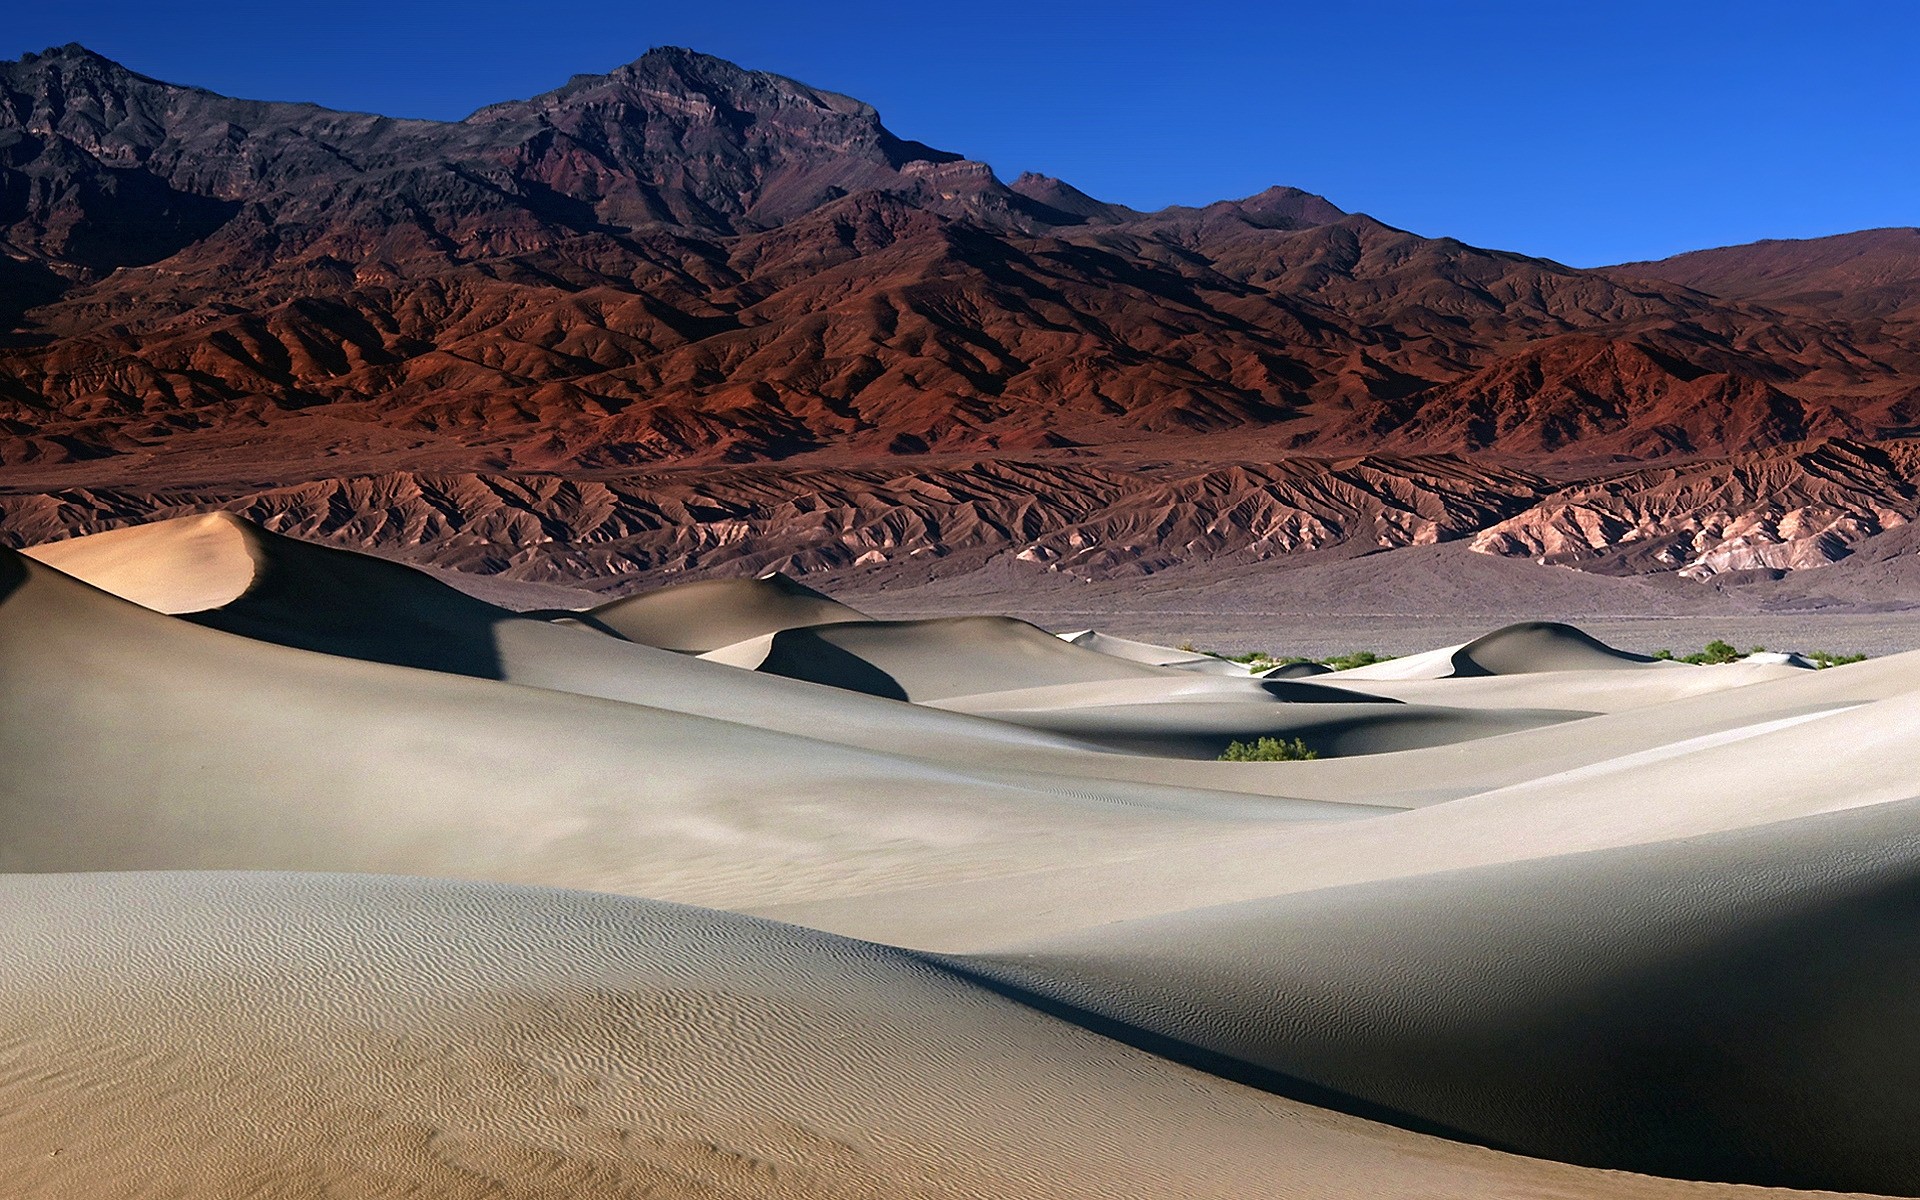 landscapes desert landscape travel sand mountain sky dune dry barren scenic hot arid valley dawn hill california sand dunes